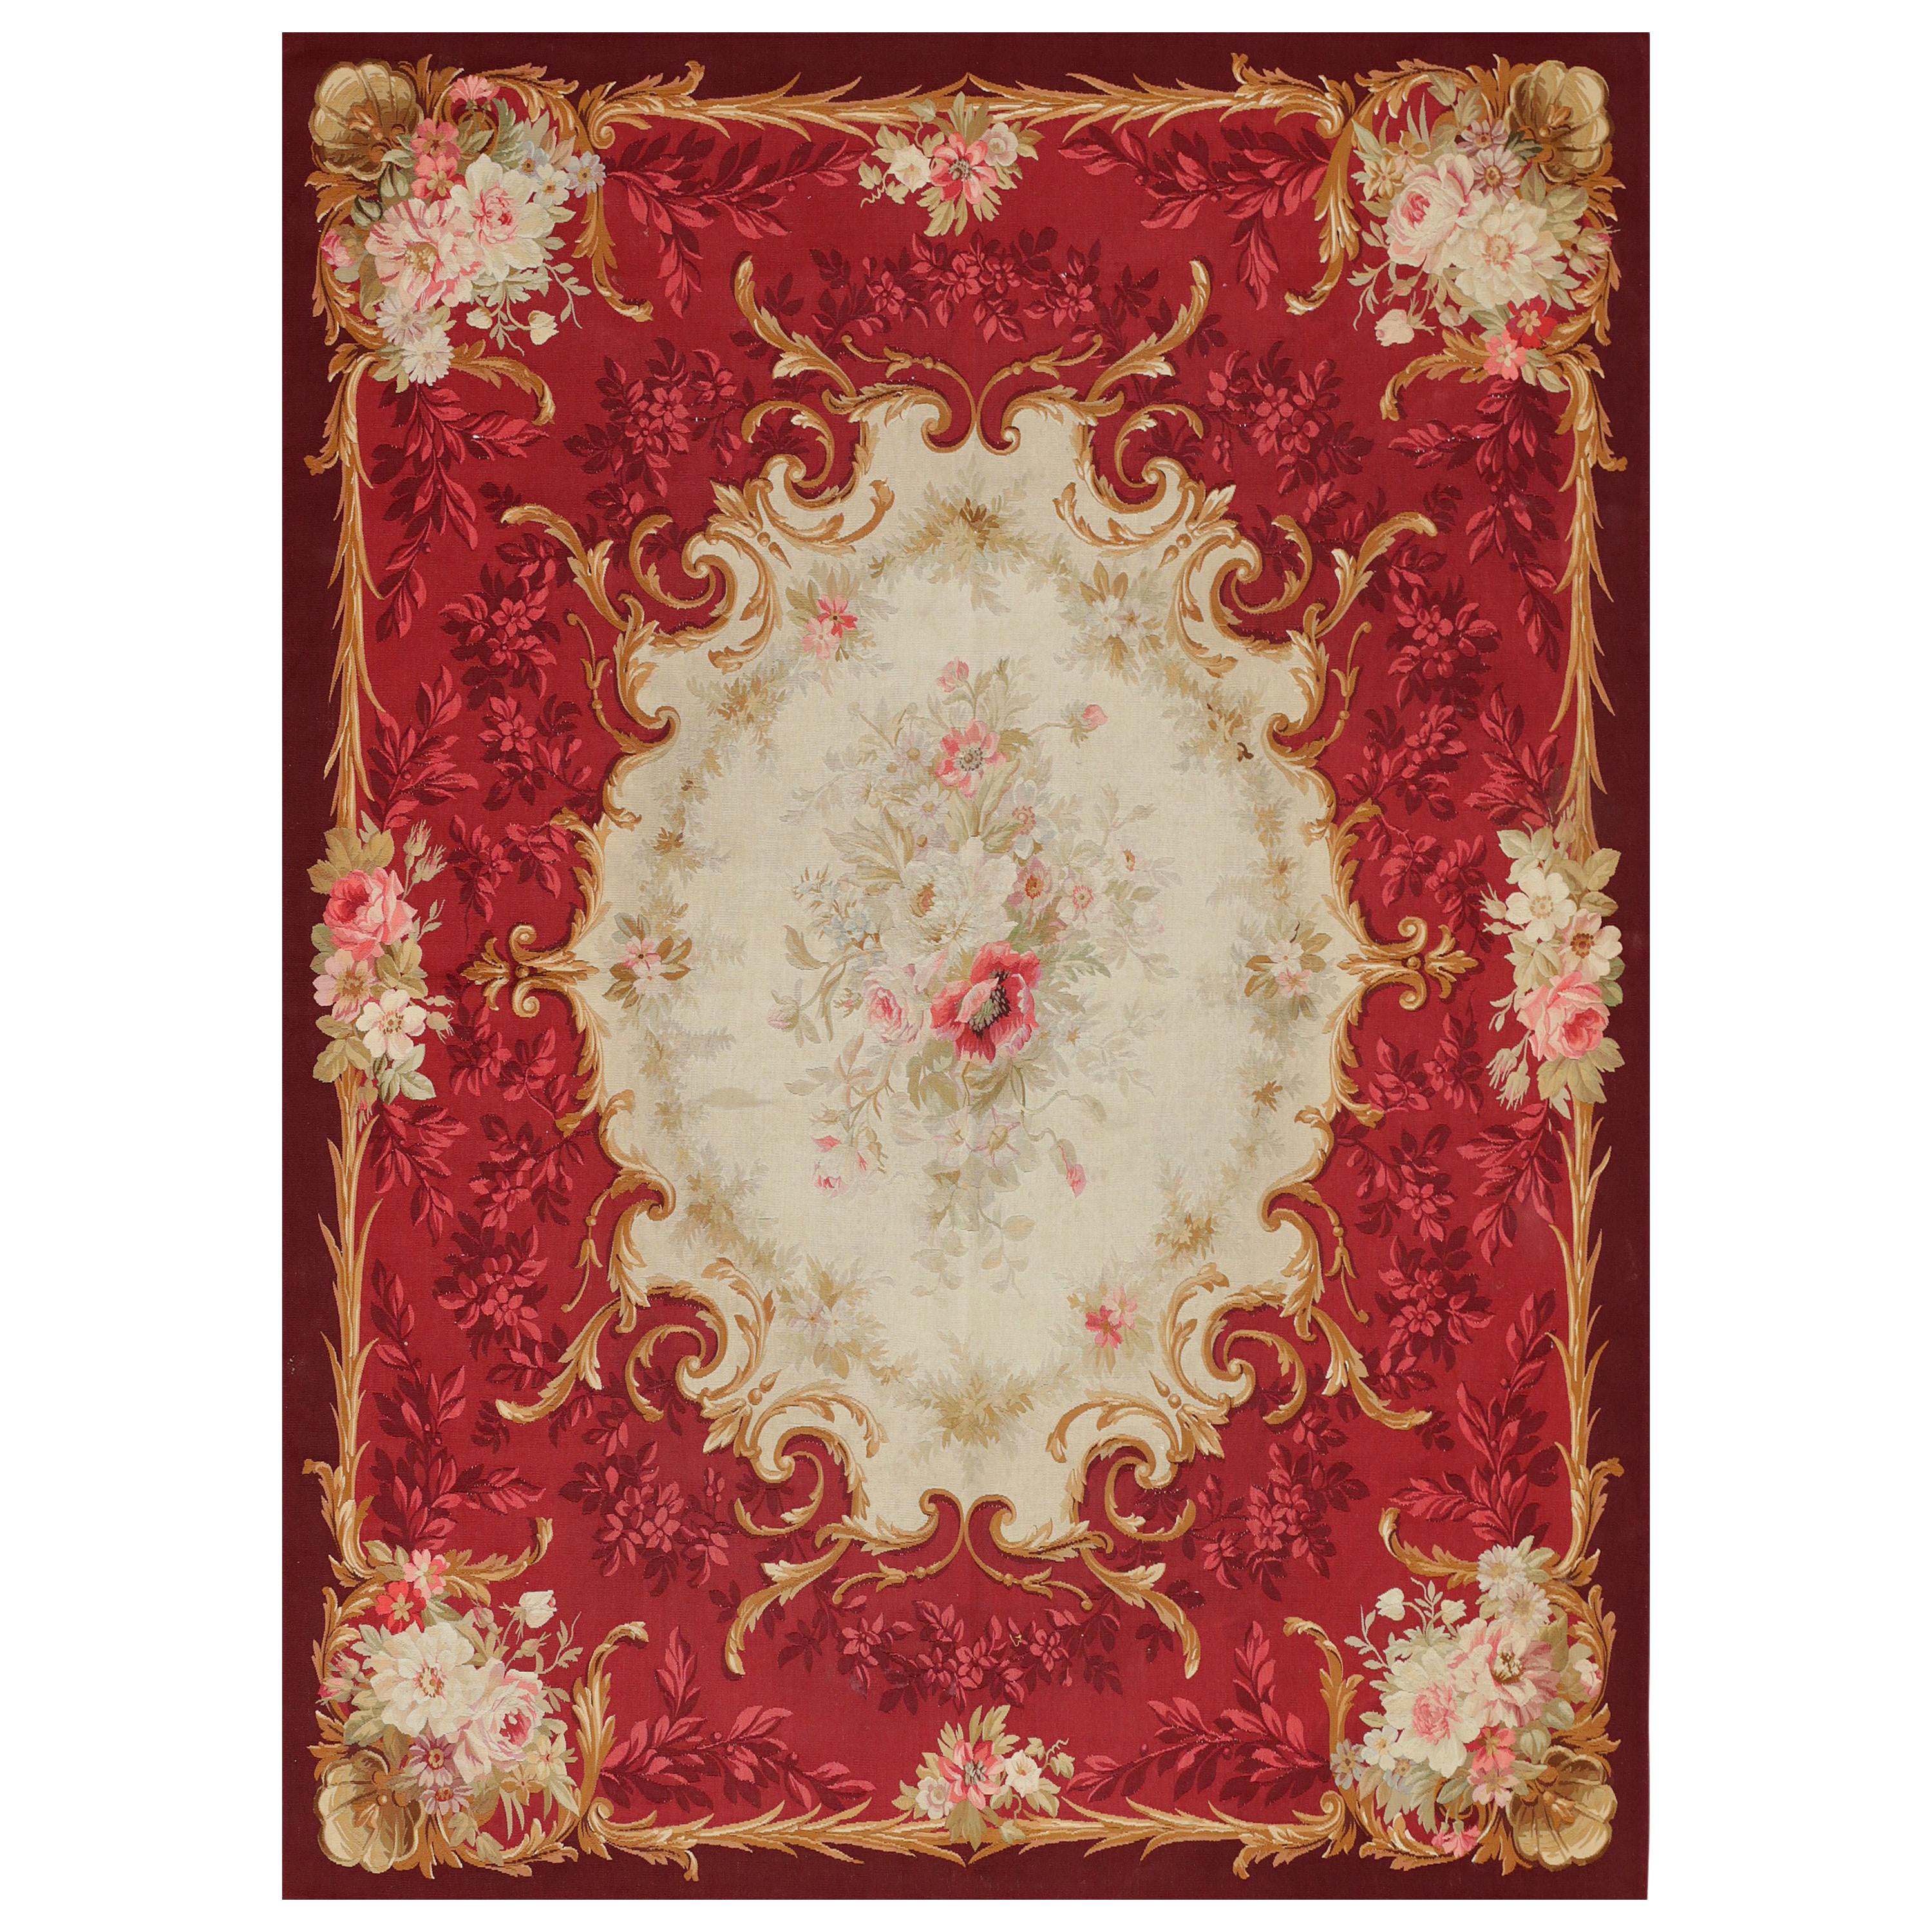 Handgewebter antiker Aubusson-Teppich aus Wolle und Seide aus der Mitte des 19. Jahrhunderts, Napoleon III.-Periode